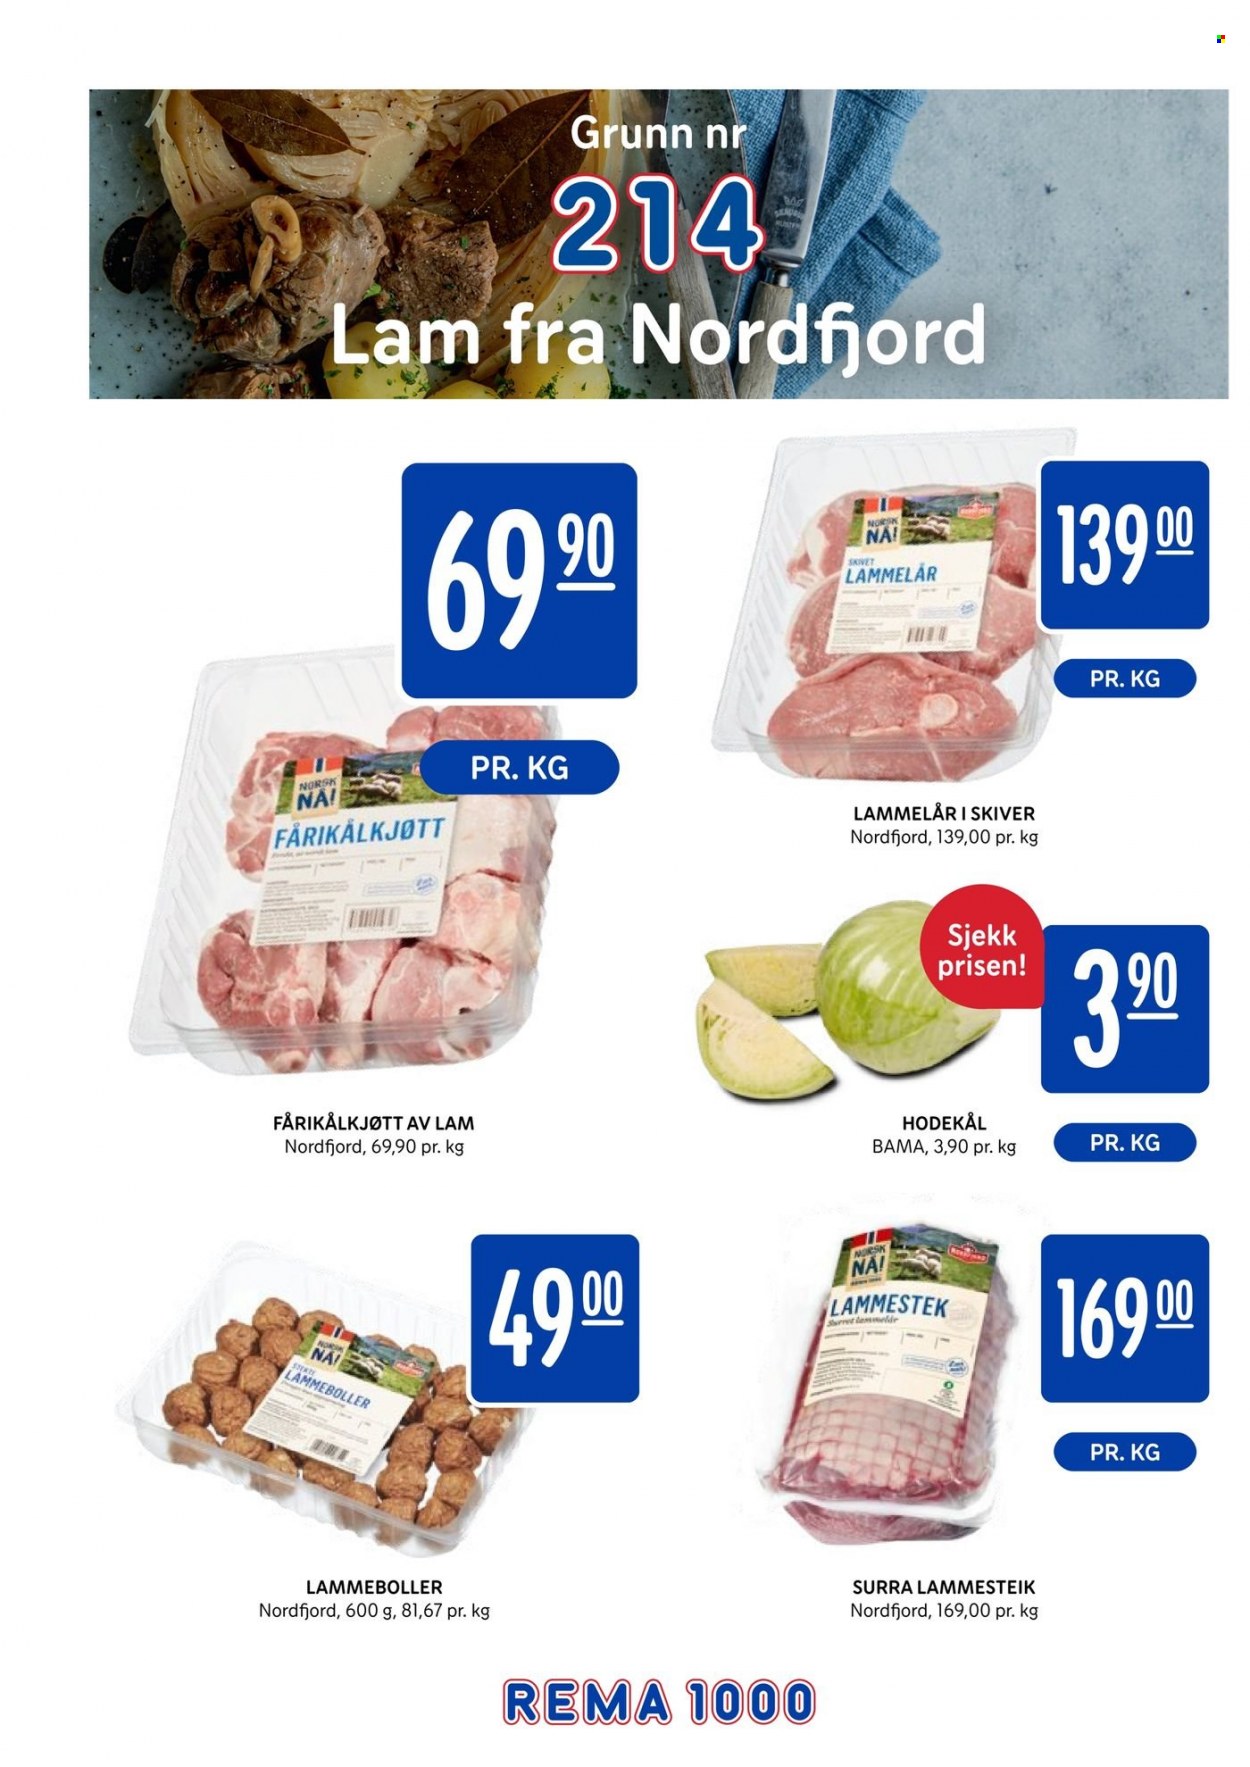 thumbnail - Kundeavis Rema 1000 - 20.9.2021 - 3.10.2021 - Produkter fra tilbudsaviser - fårikålkjøtt, lammekjøtt, lammelår, lammestek, hodekål. Side 2.